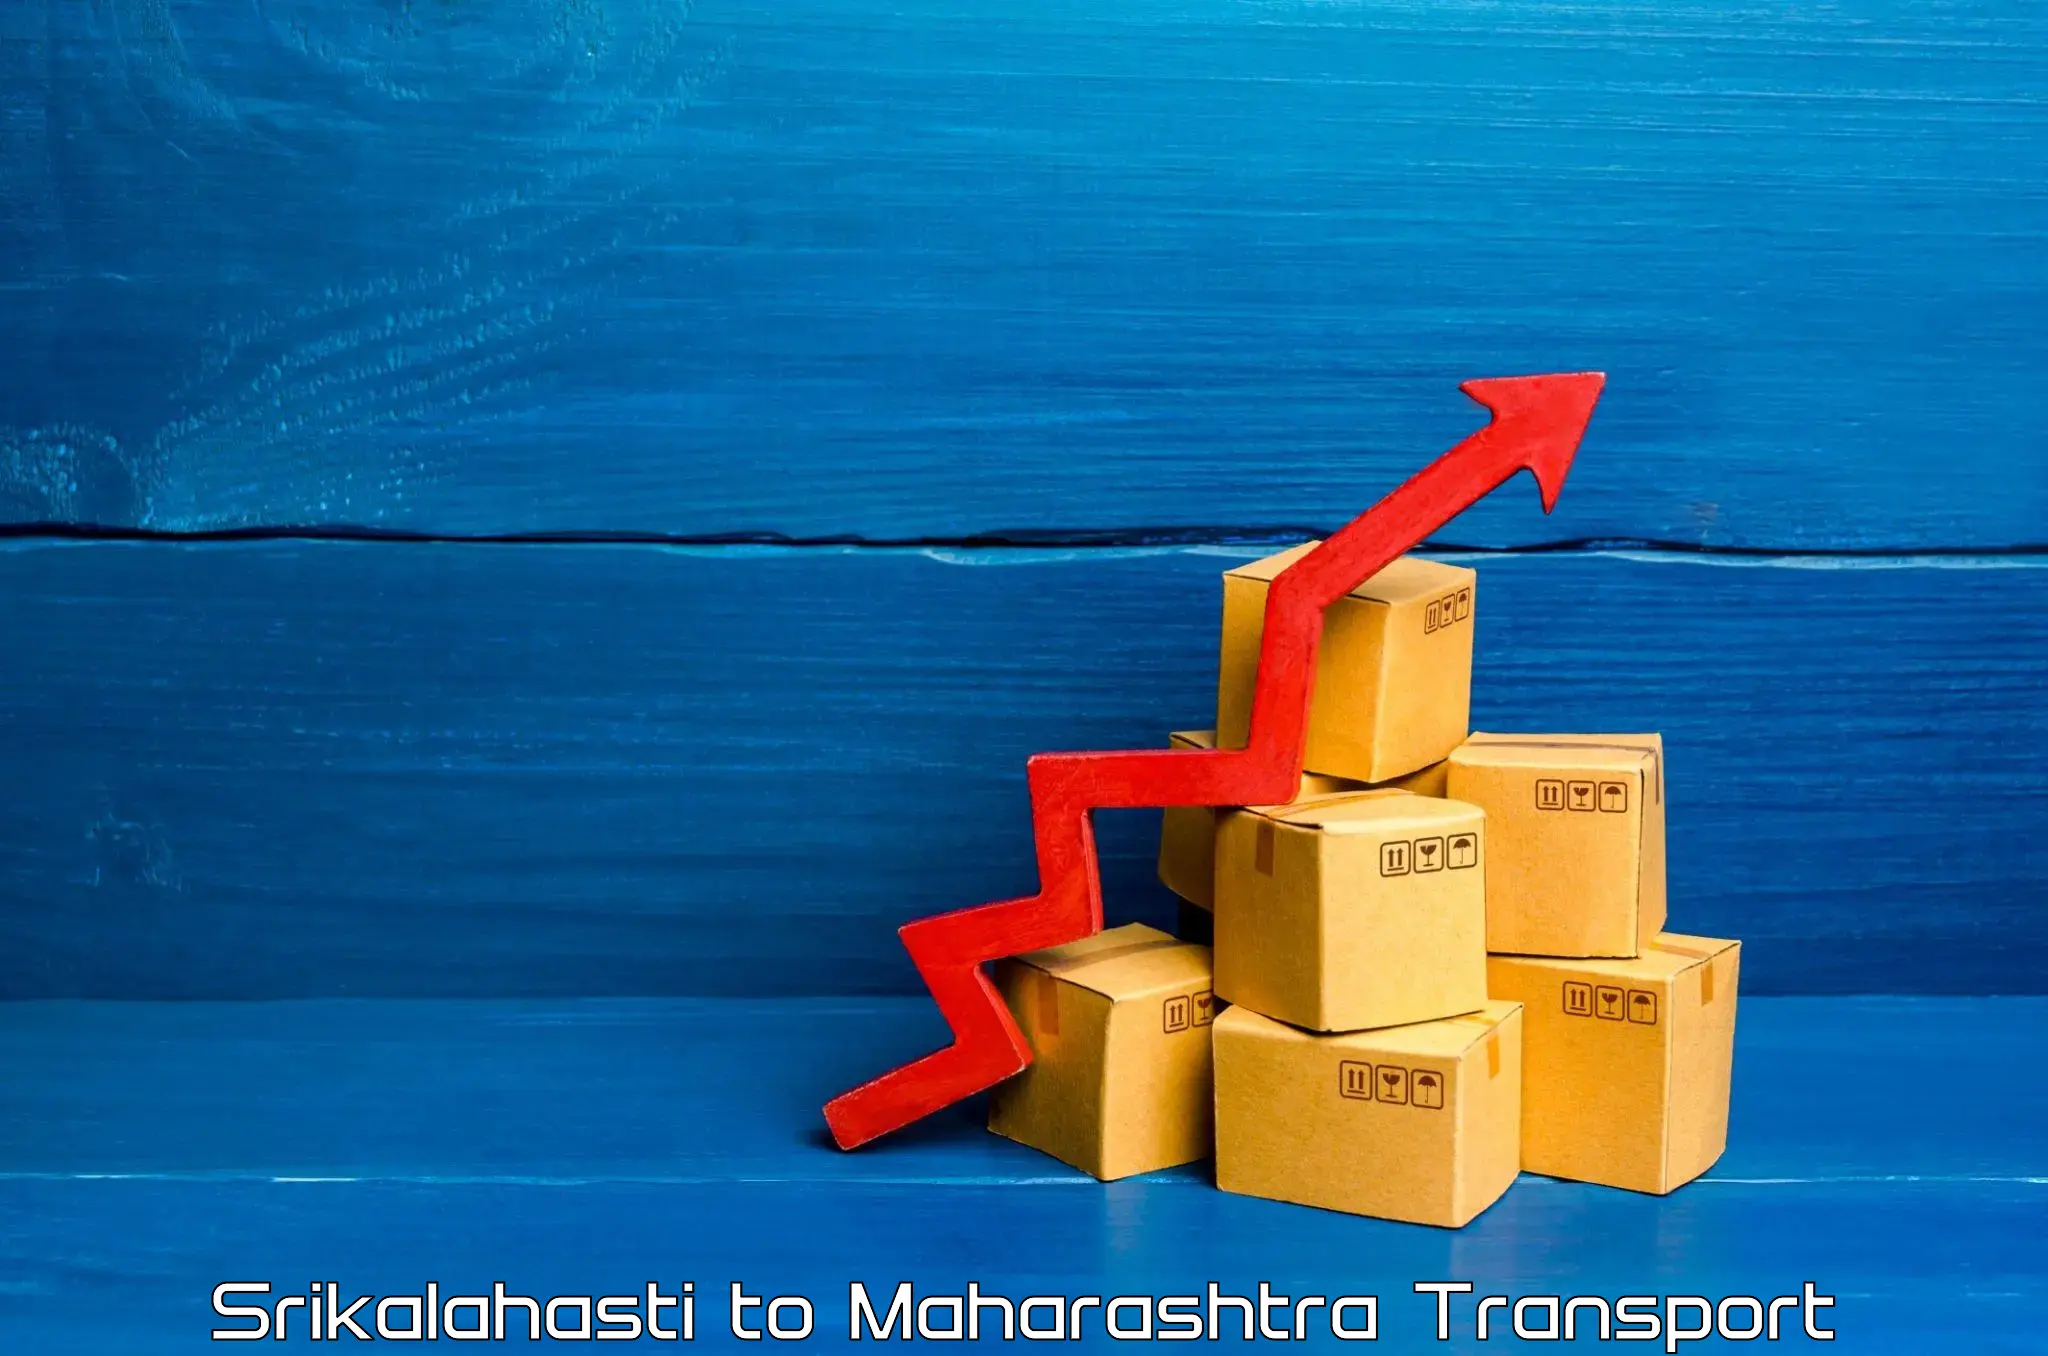 Commercial transport service Srikalahasti to Maharashtra